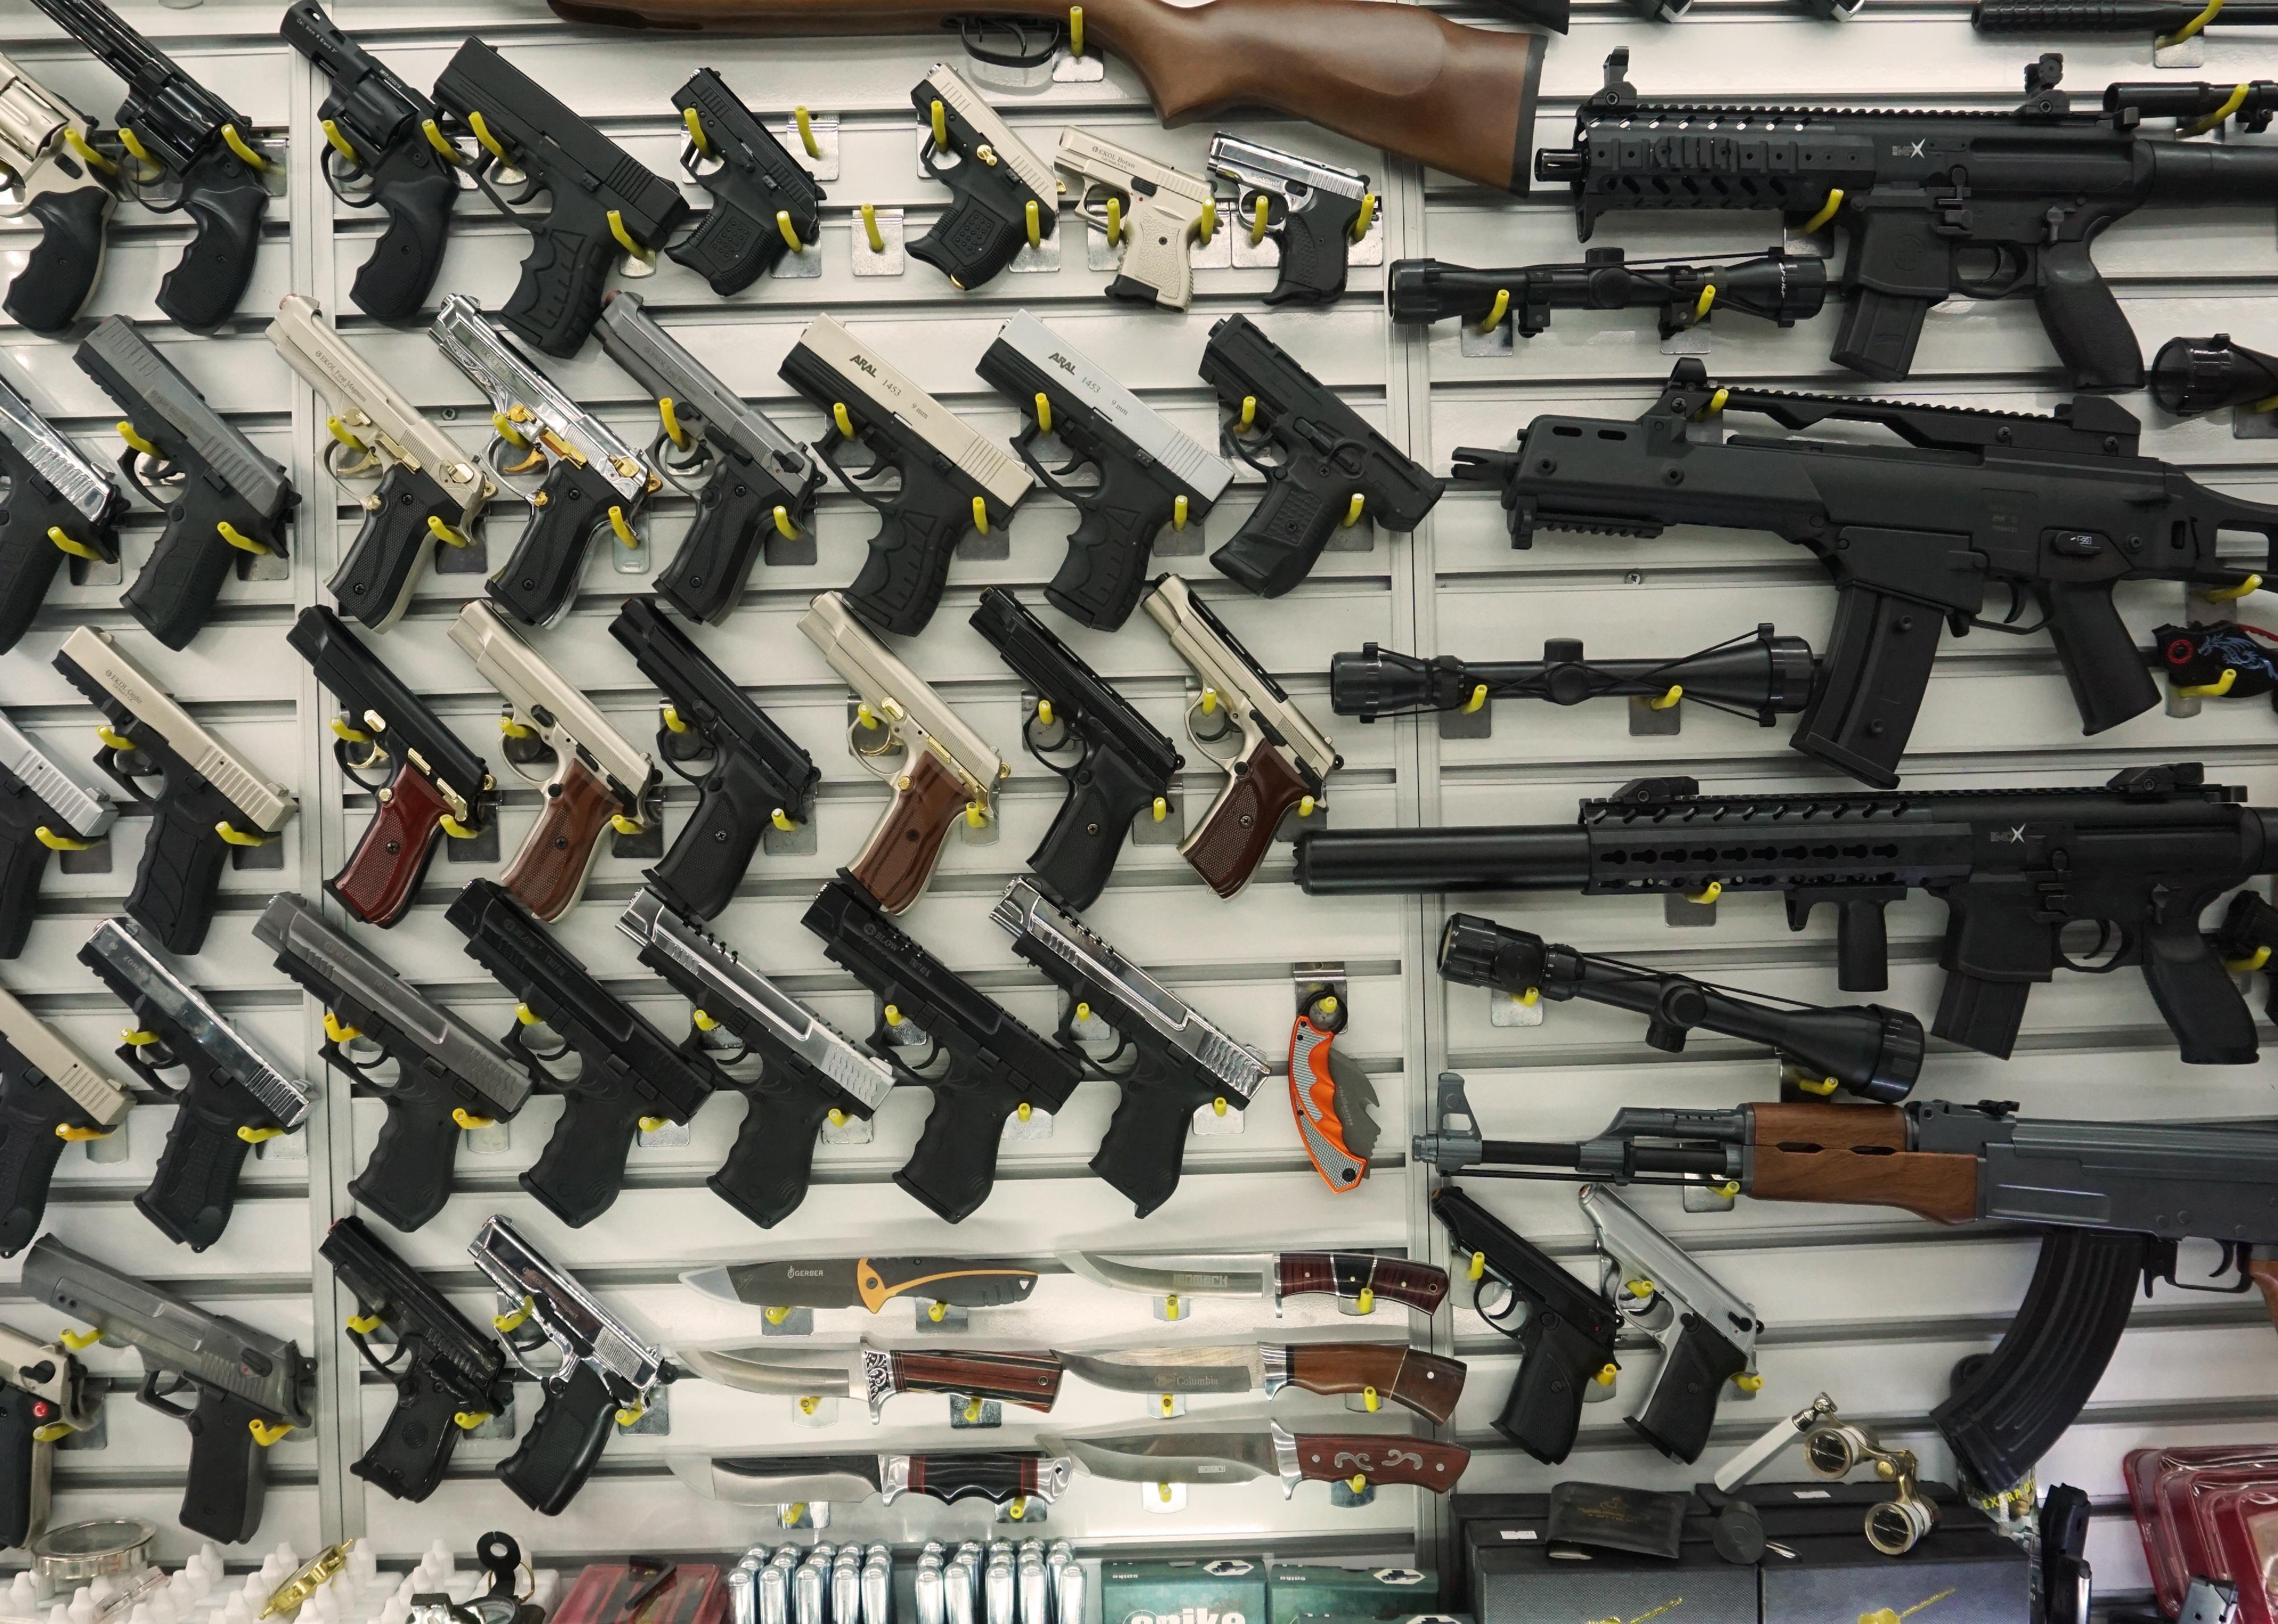 Showcase of a gun shop display.